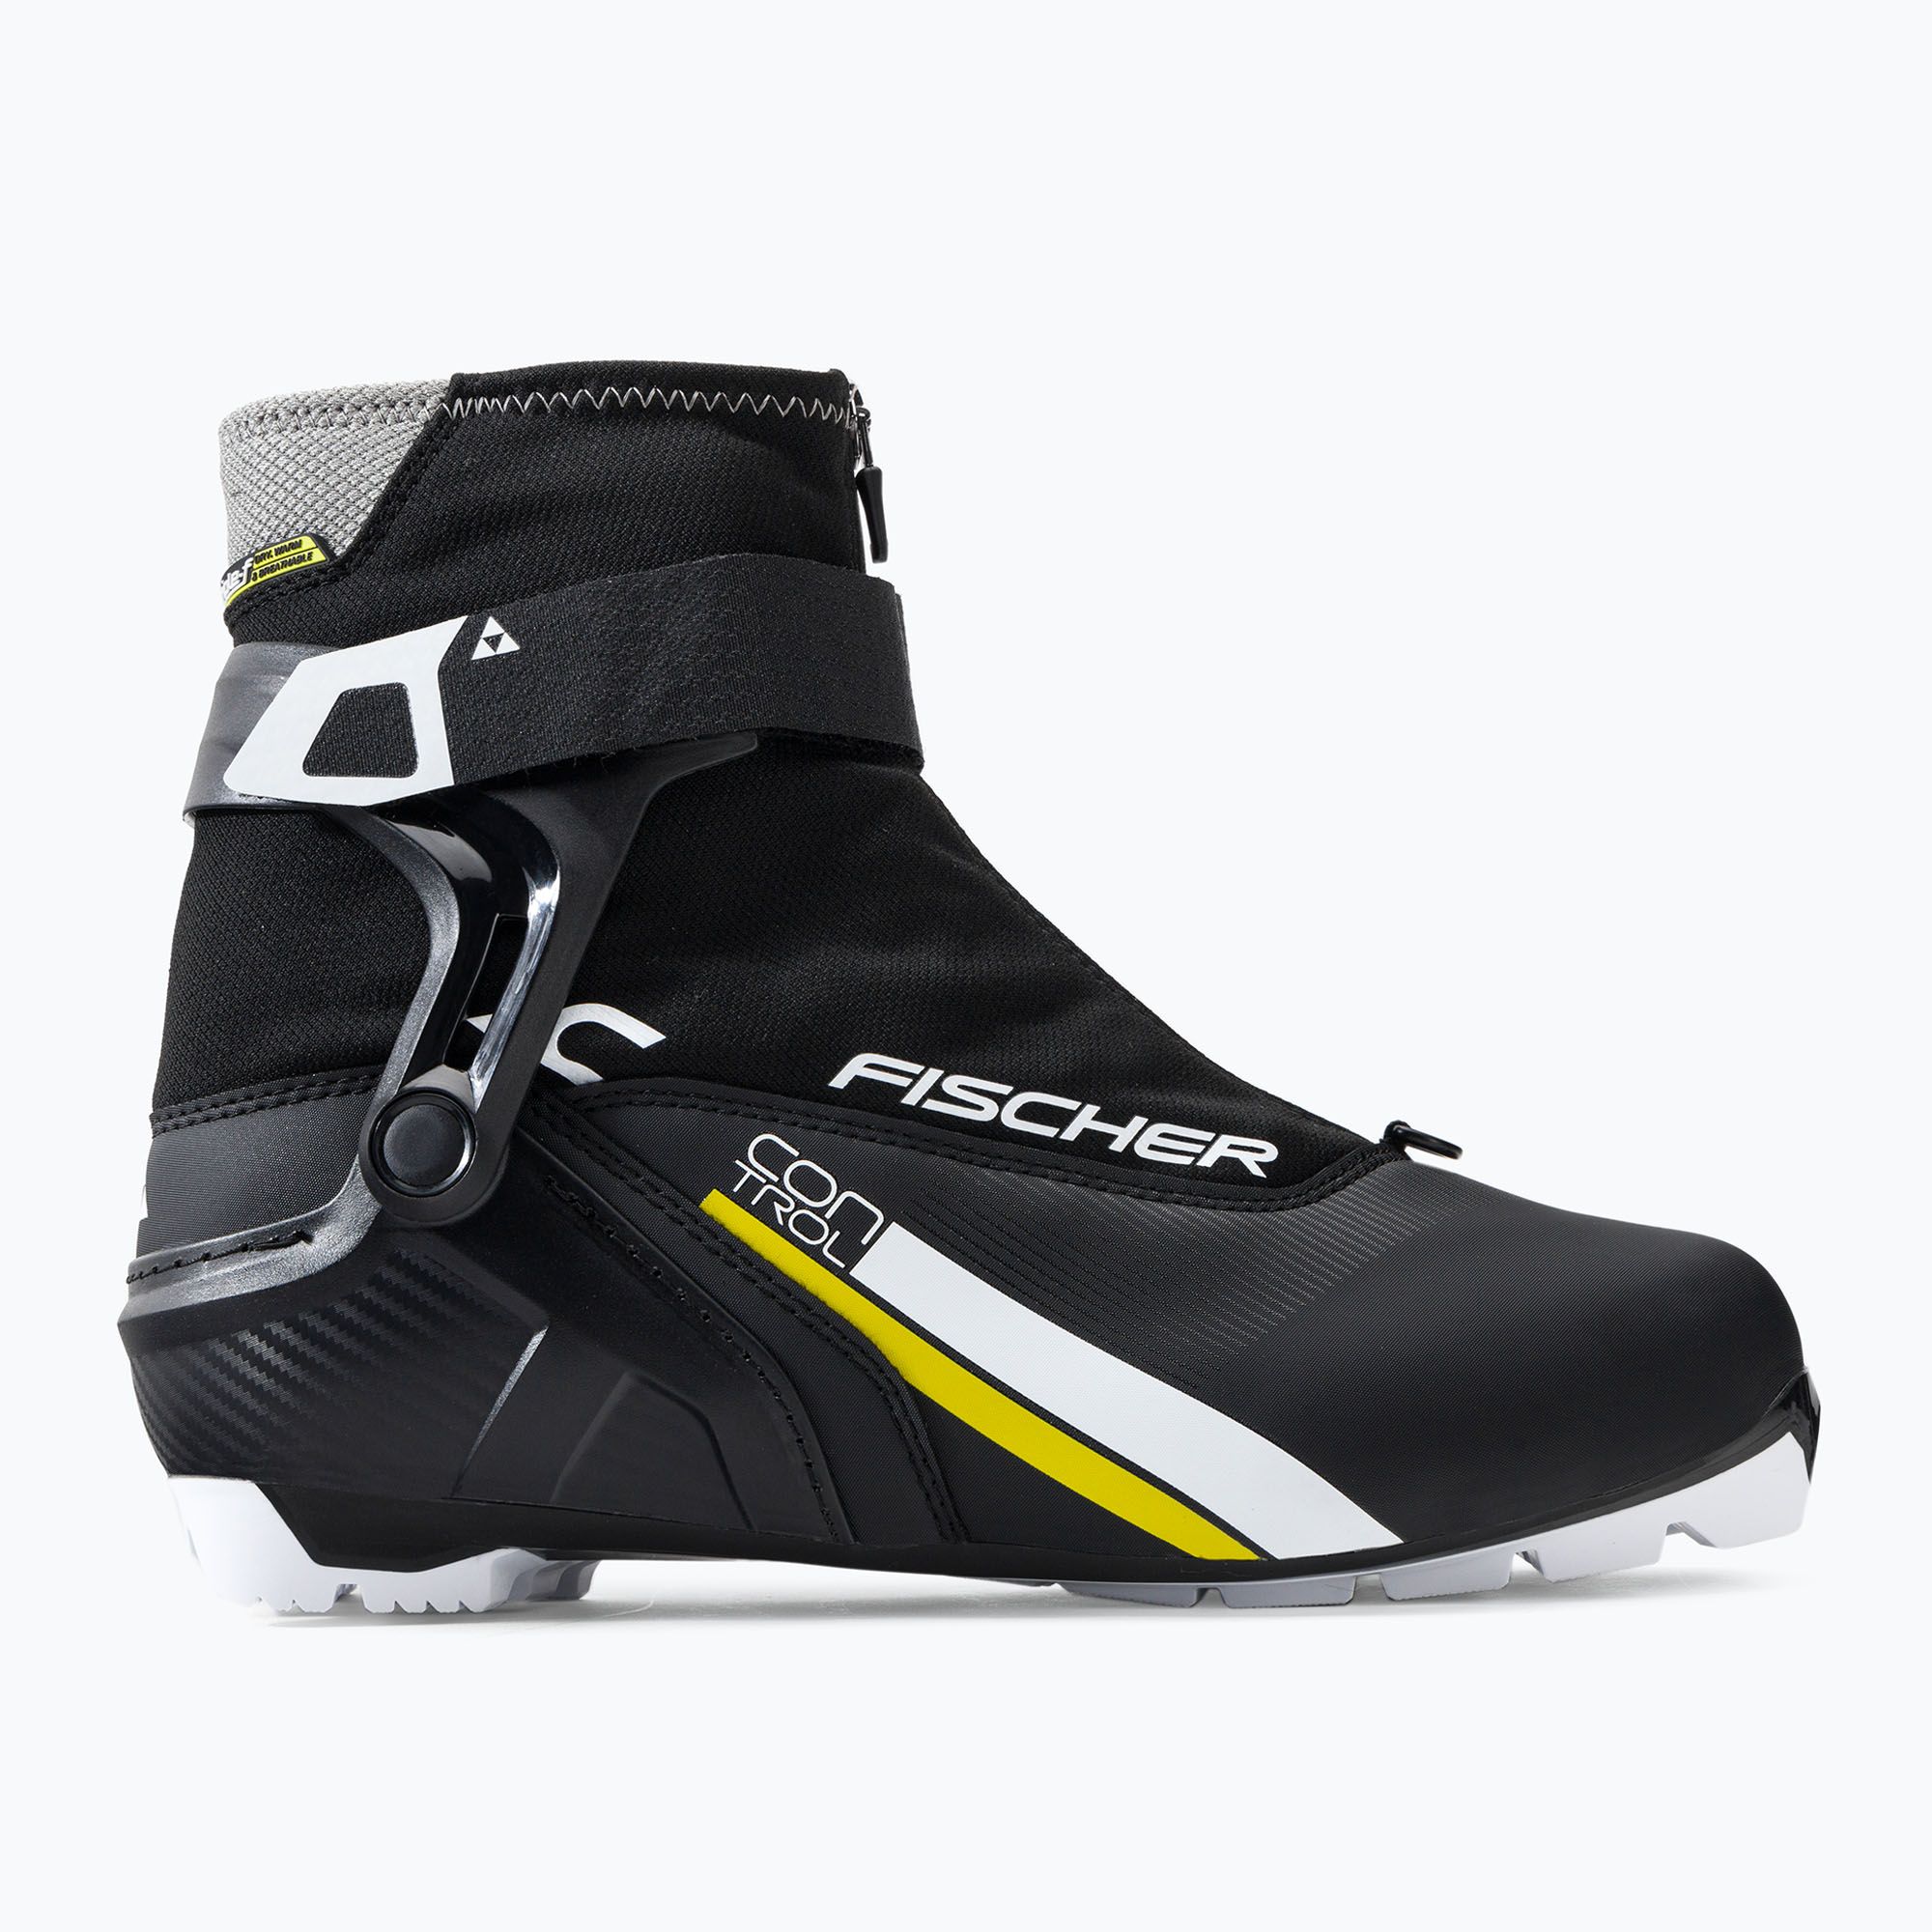 Buty do nart biegowych Fischer XC Control black/white/yellow zdjęcie nr 2